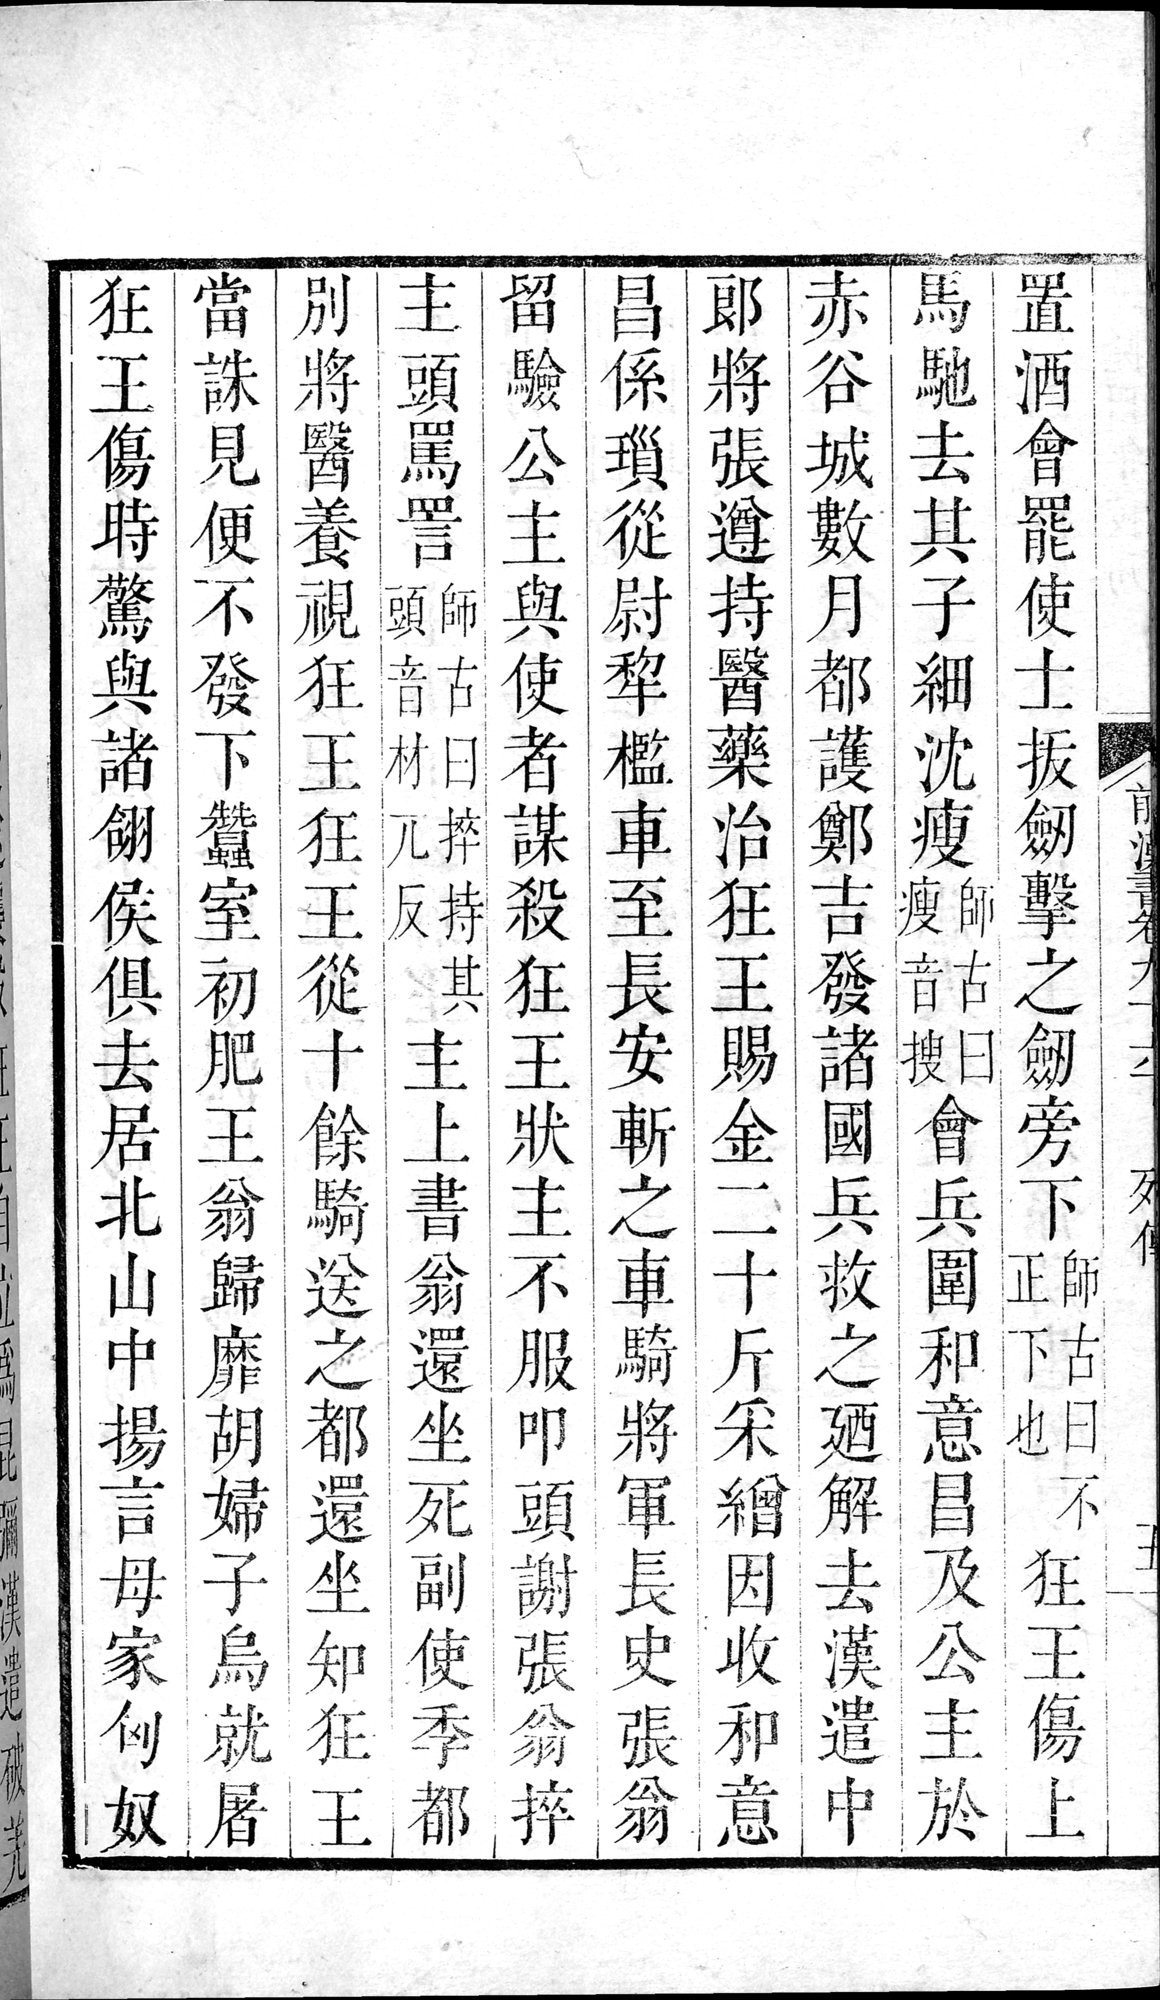 前漢書 巻96下 : vol.96 bottom / Page 10 (Grayscale High Resolution Image)